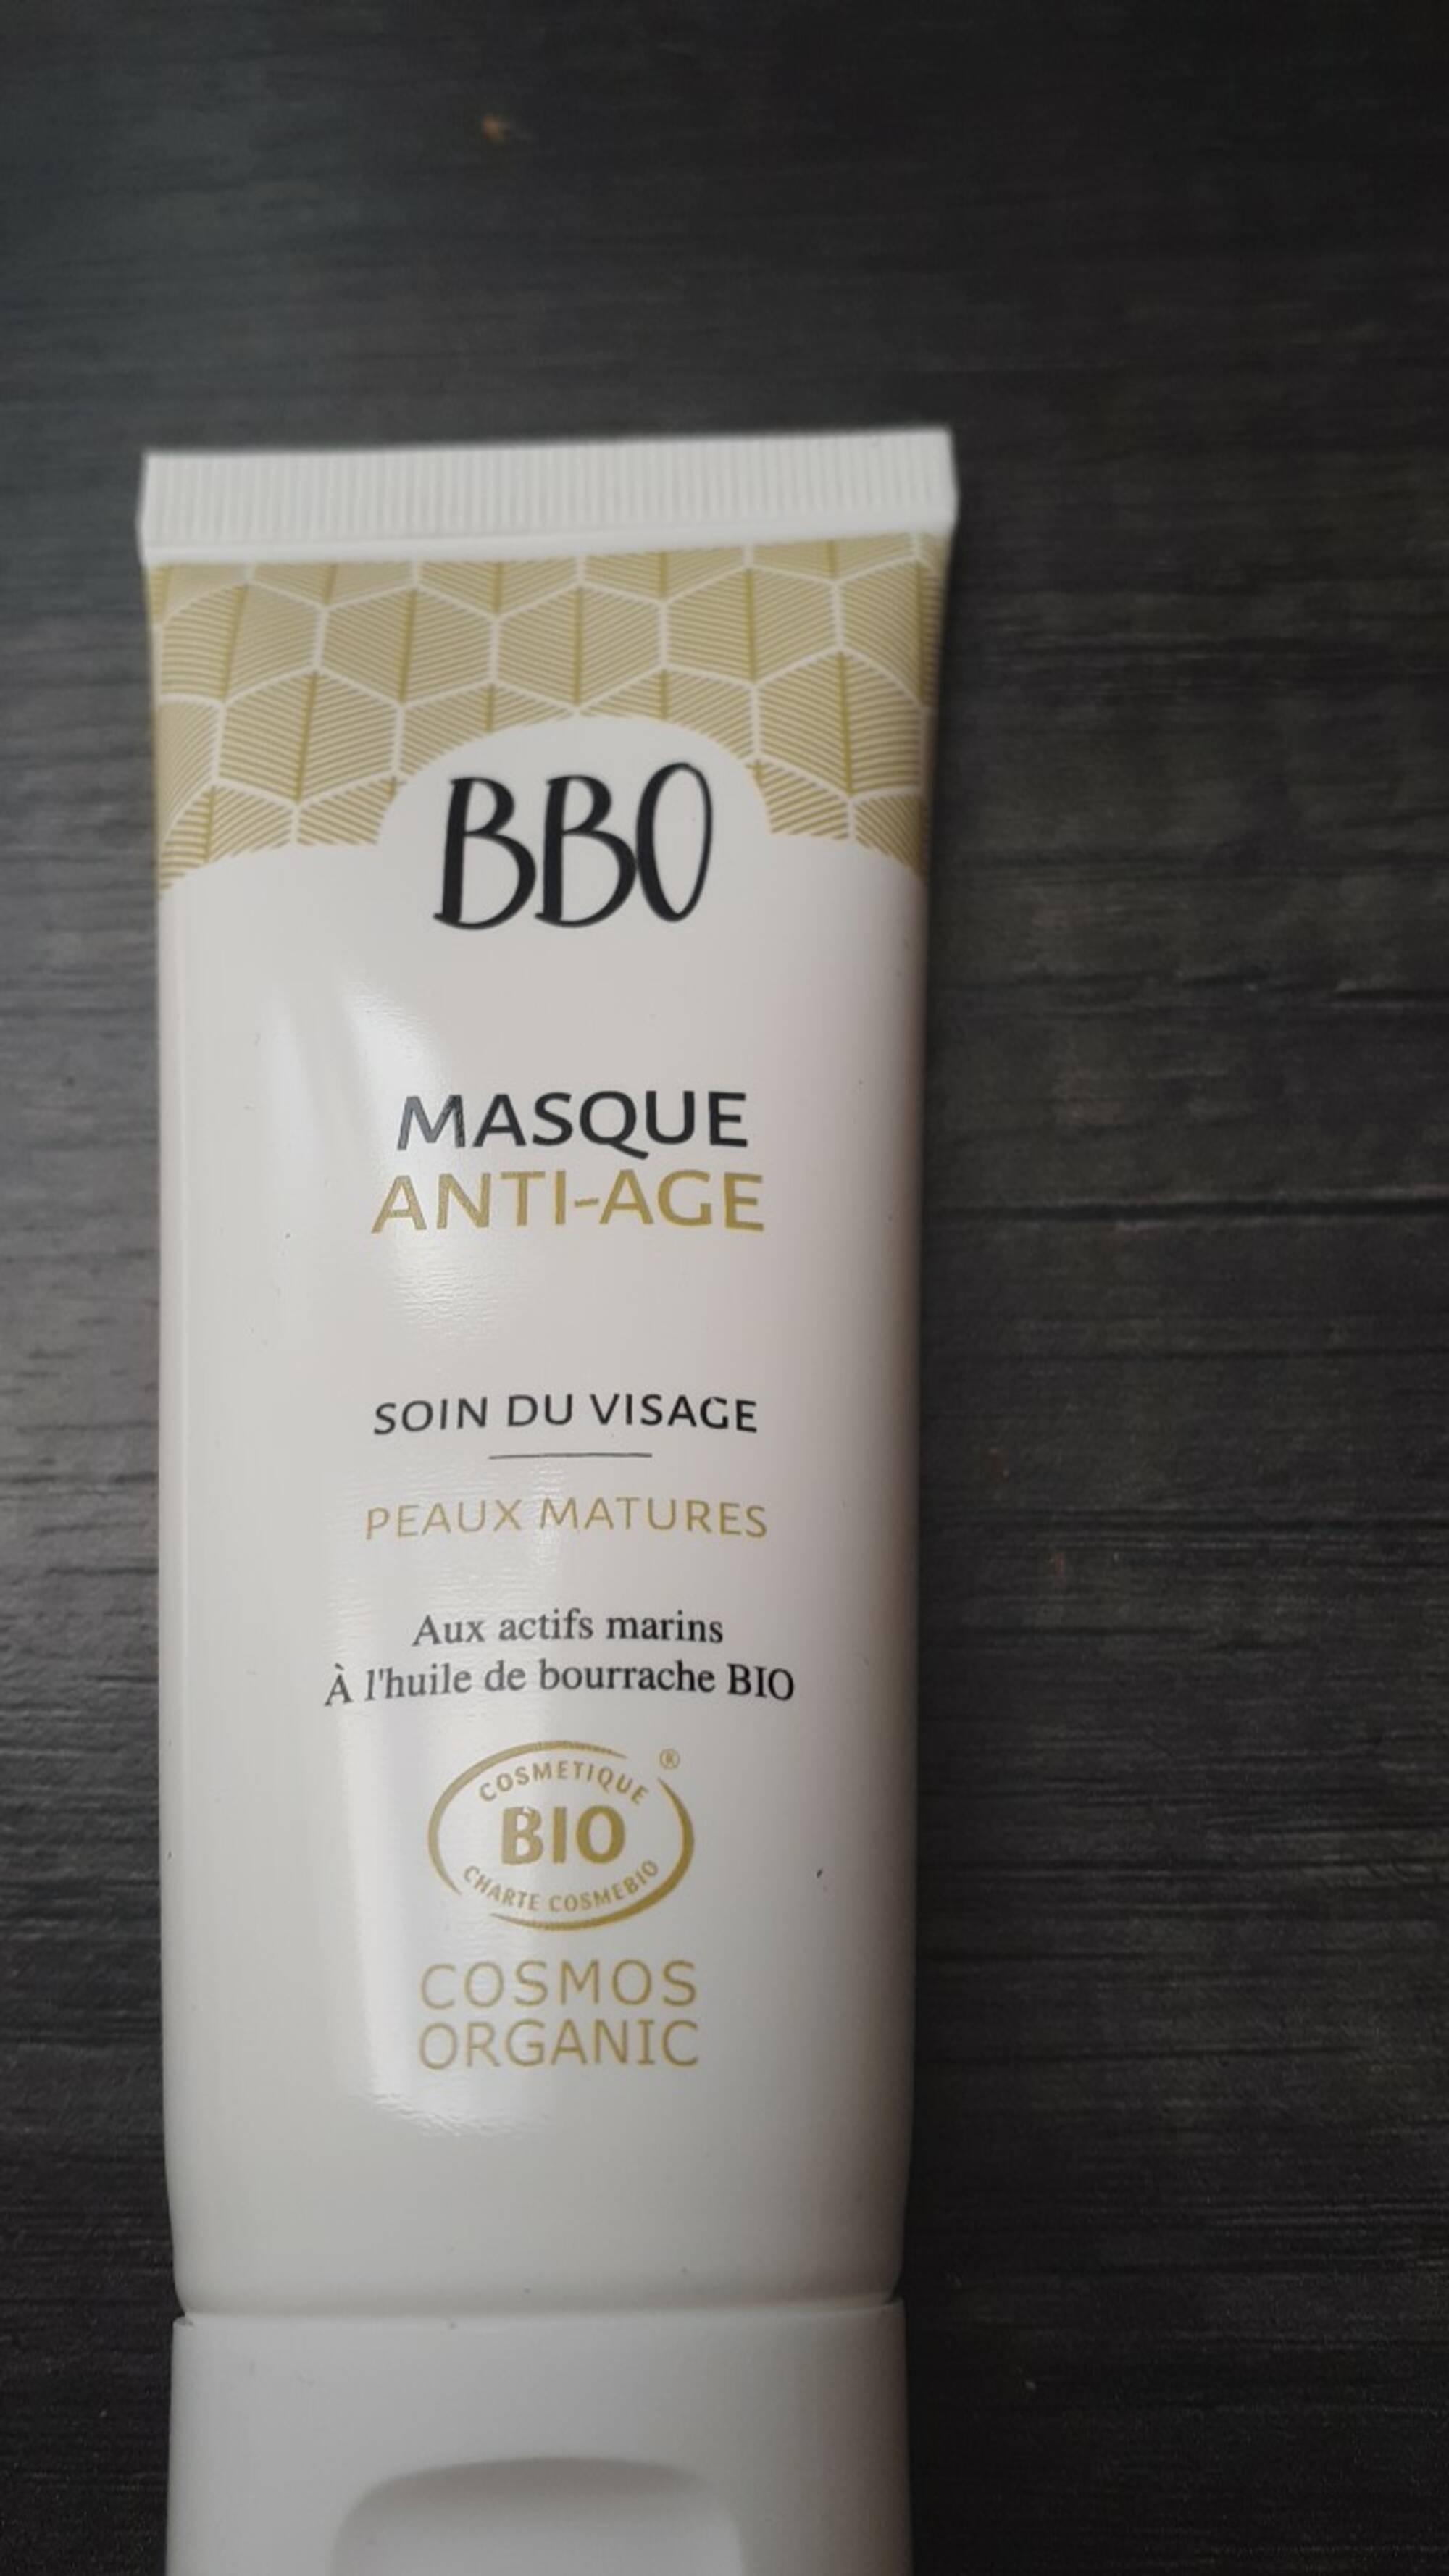 BBO - Masque anti-age peaux matures